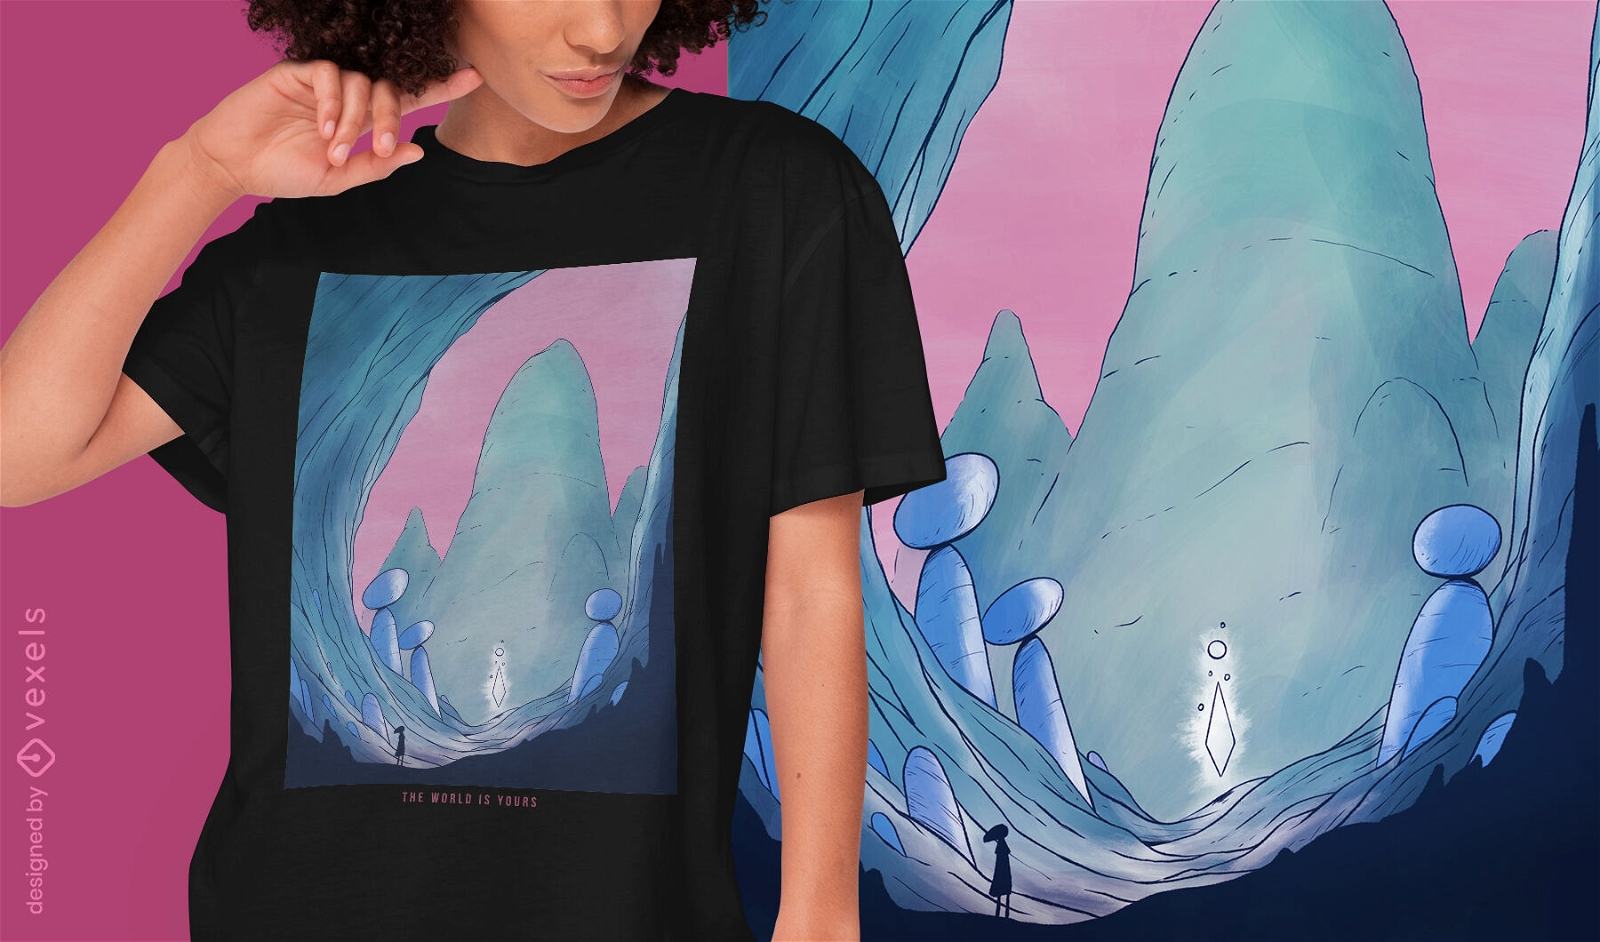 Cave with rocks fantasy landscape t-shirt design